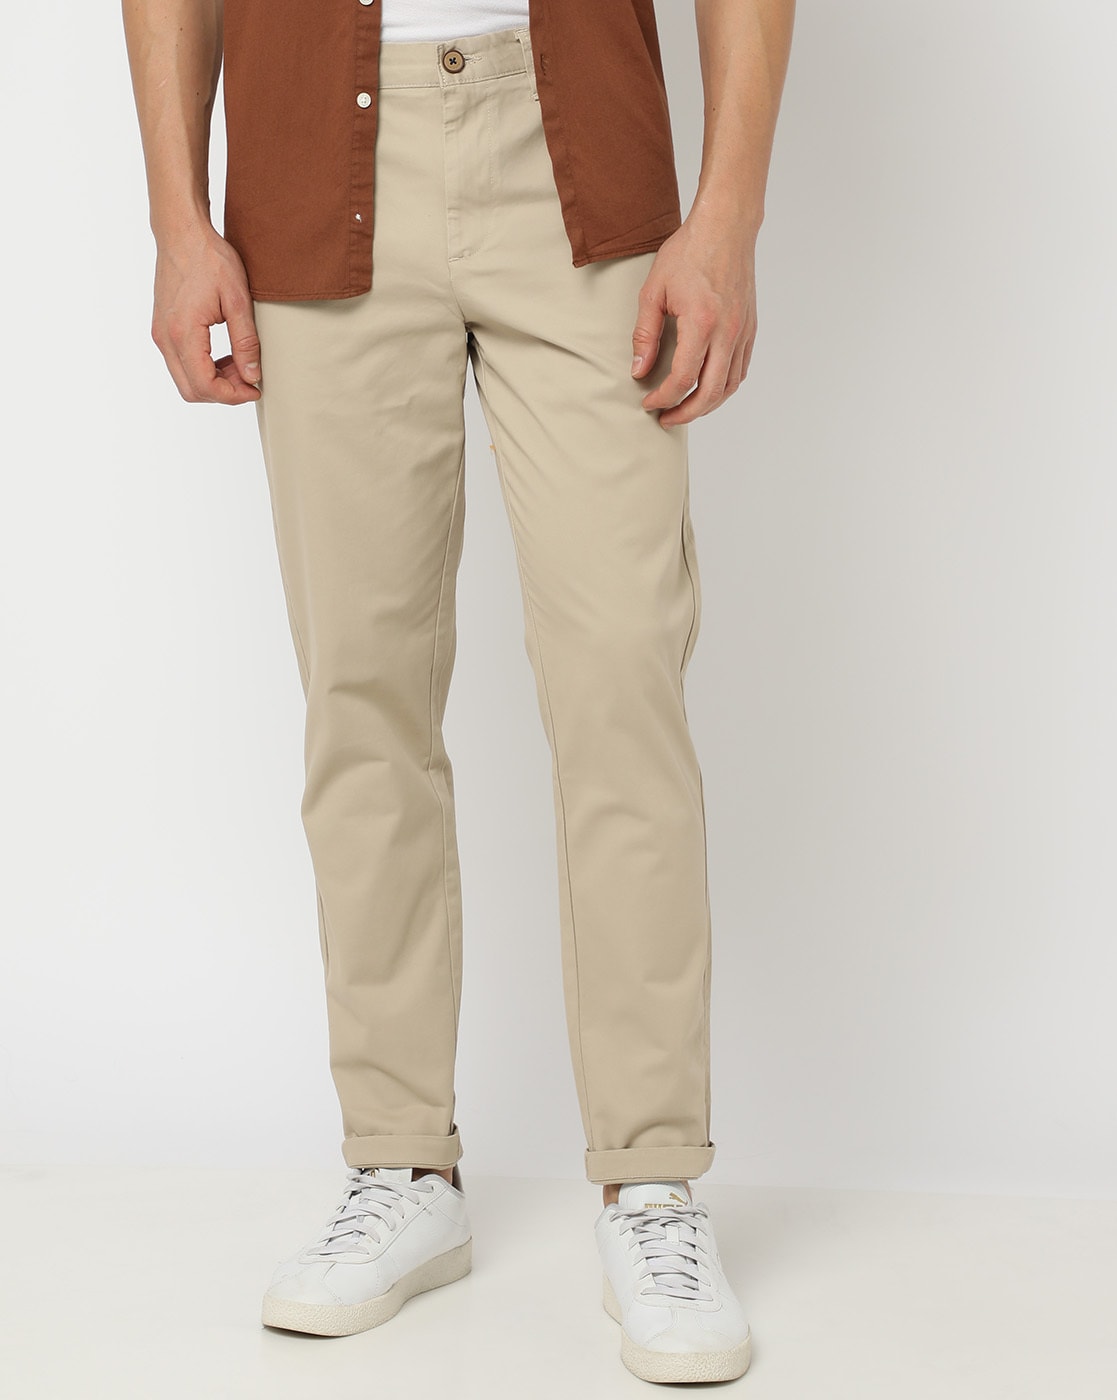 Meyer Bonn Constant Color Cotton Flat-Front Pants Stone Beige | Jan Rozing  Men's Fashion